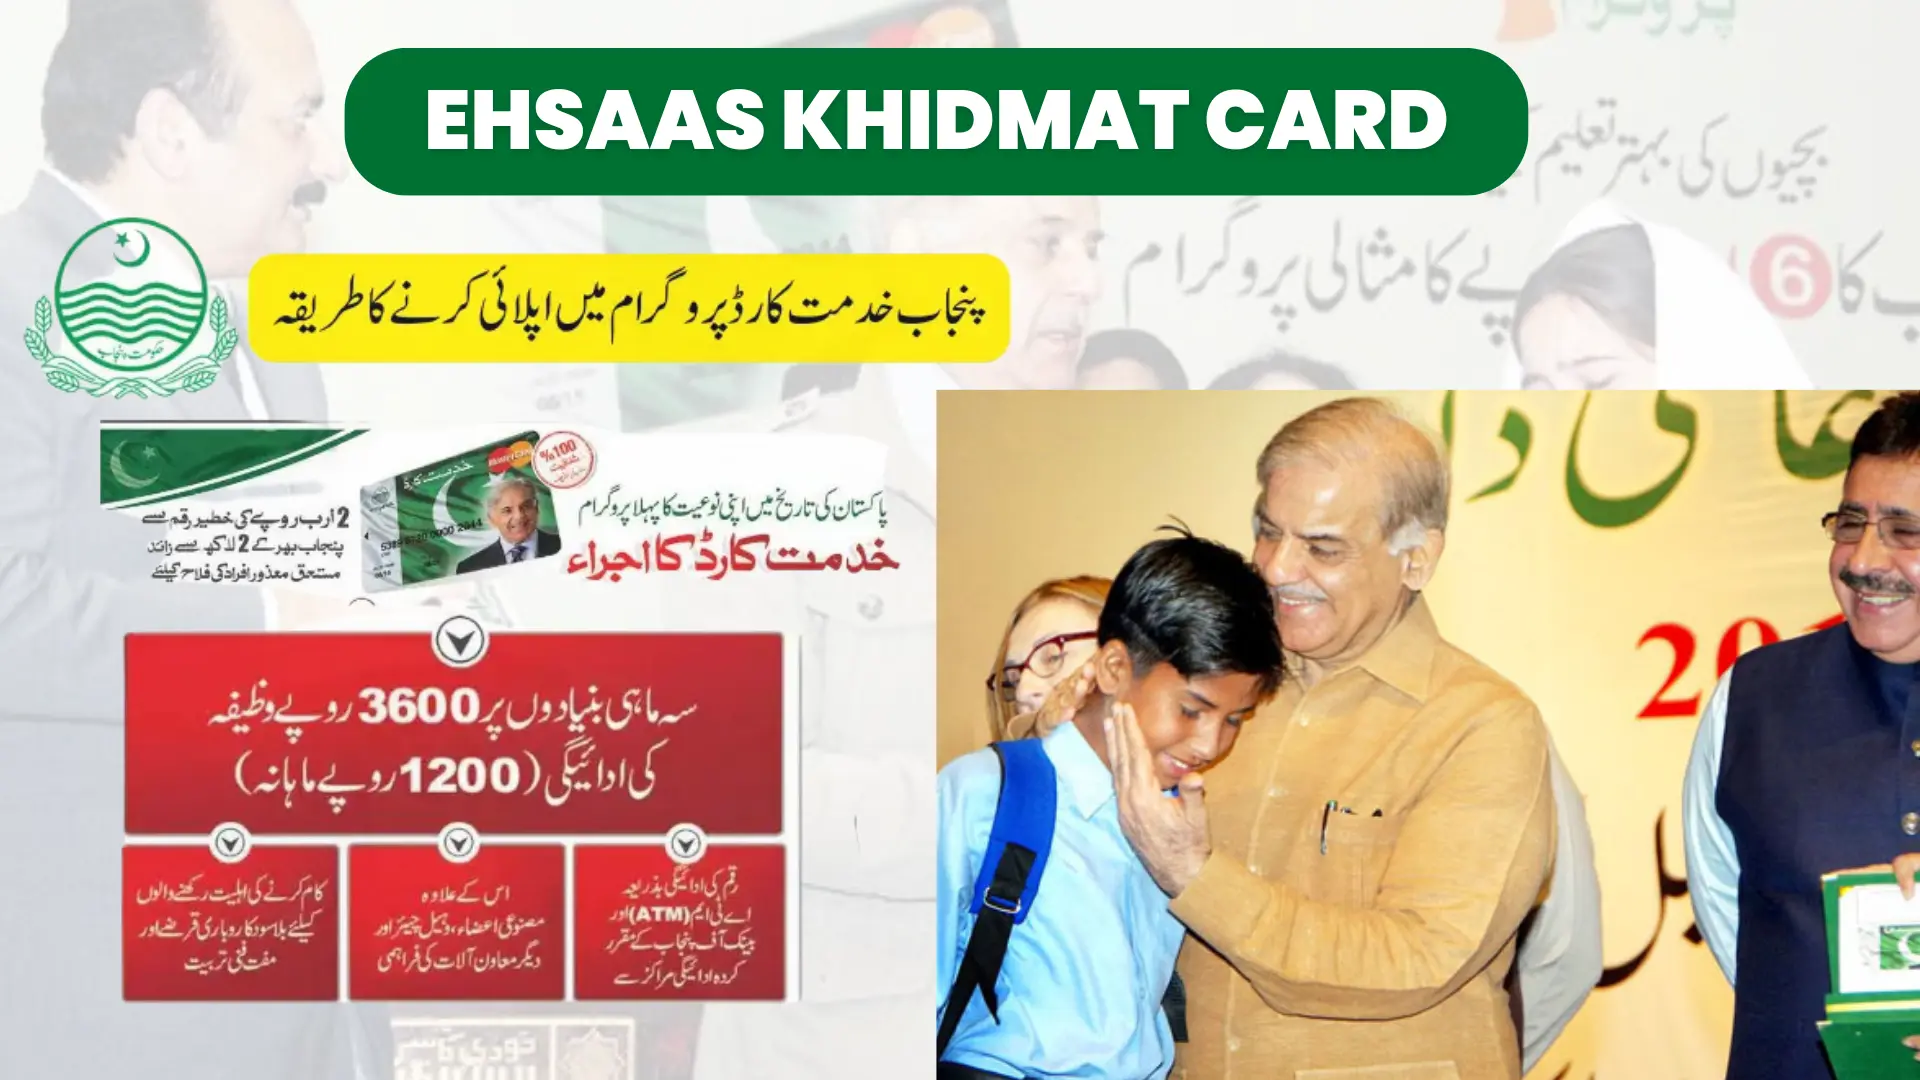 Ehsaas Khidmat Card